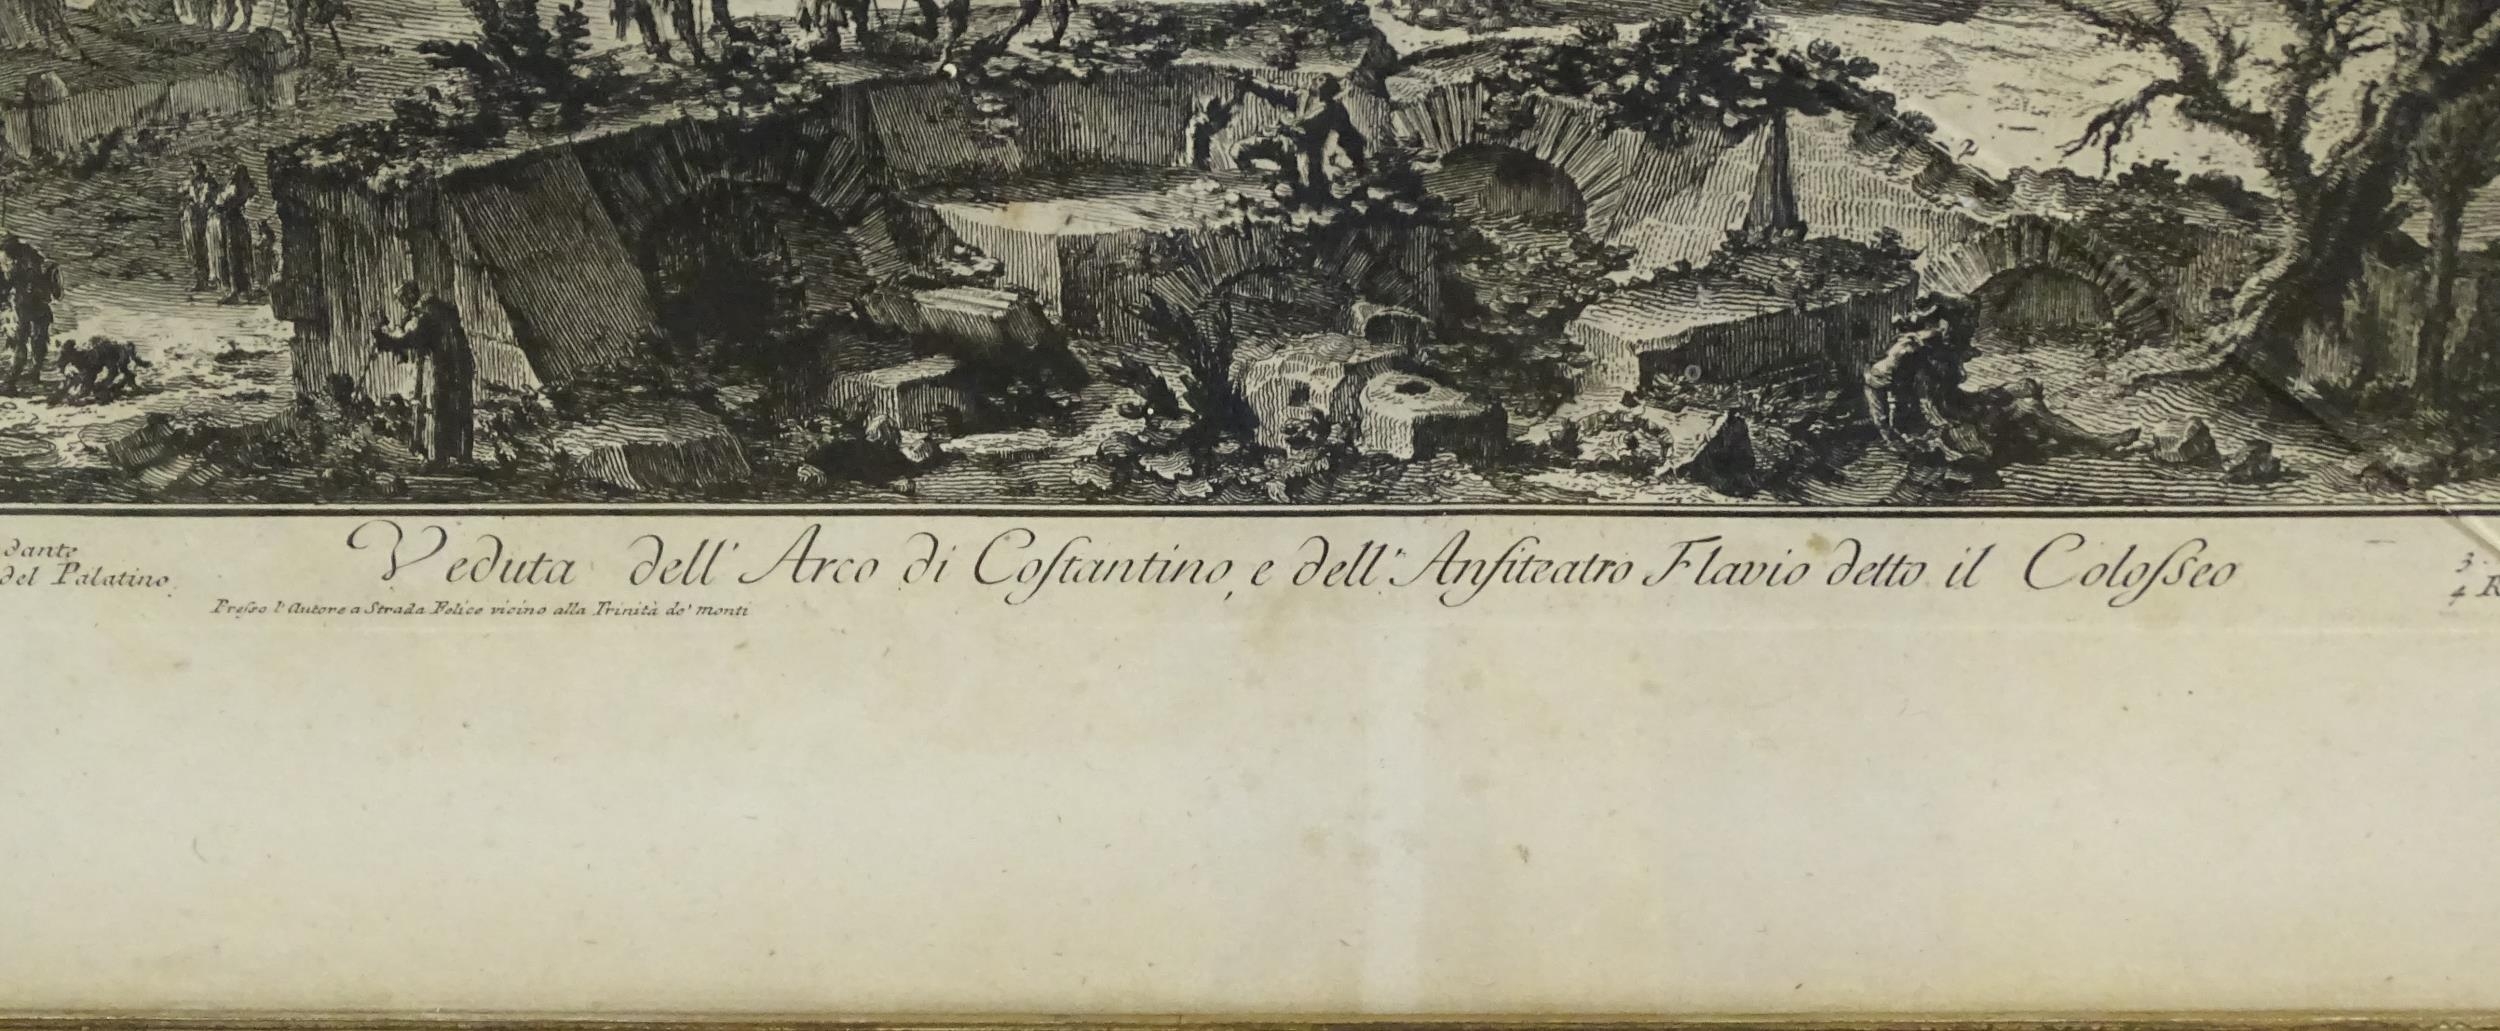 After Giovanni Battista Piranesi (1720-1788), Etching, Veduta dell' Arco di Costantino, e dell' - Image 6 of 6